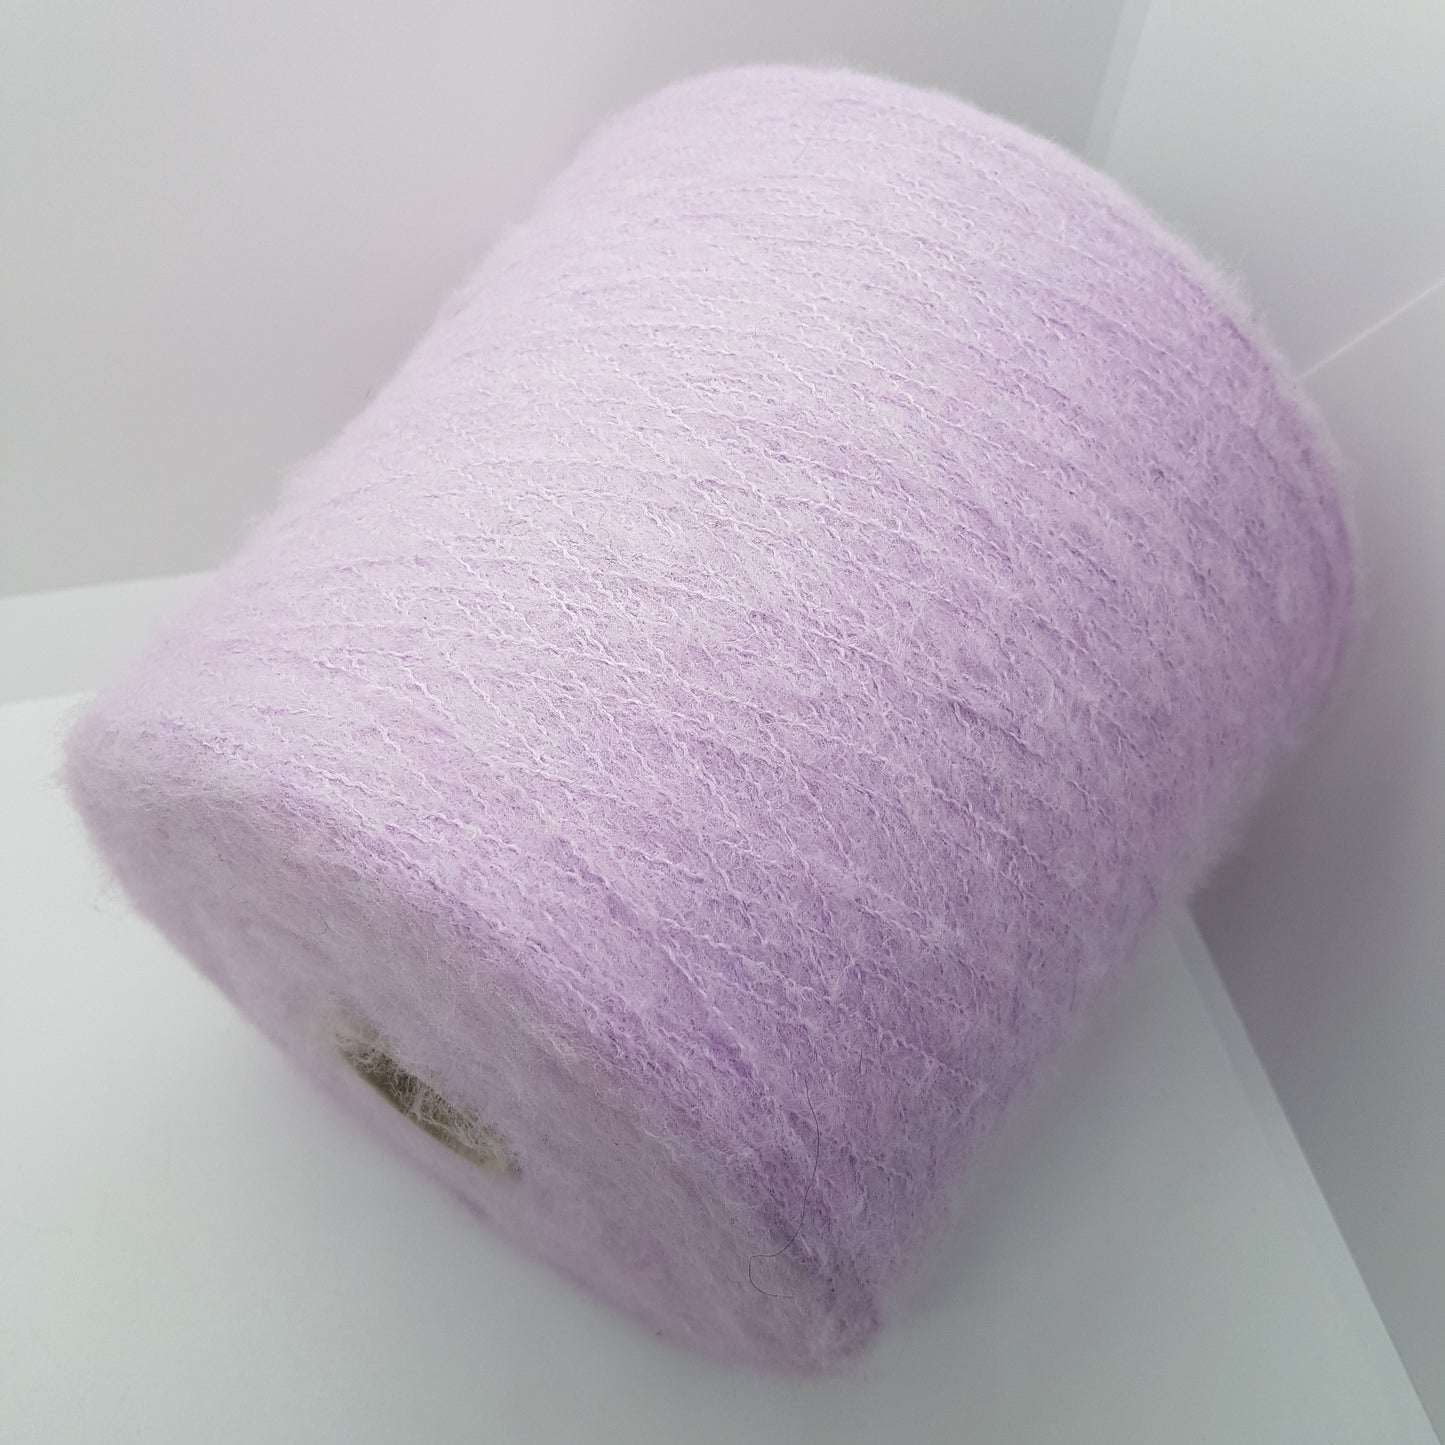 100g børstet uld blødt italiensk garn farve lilla lavendel N.294